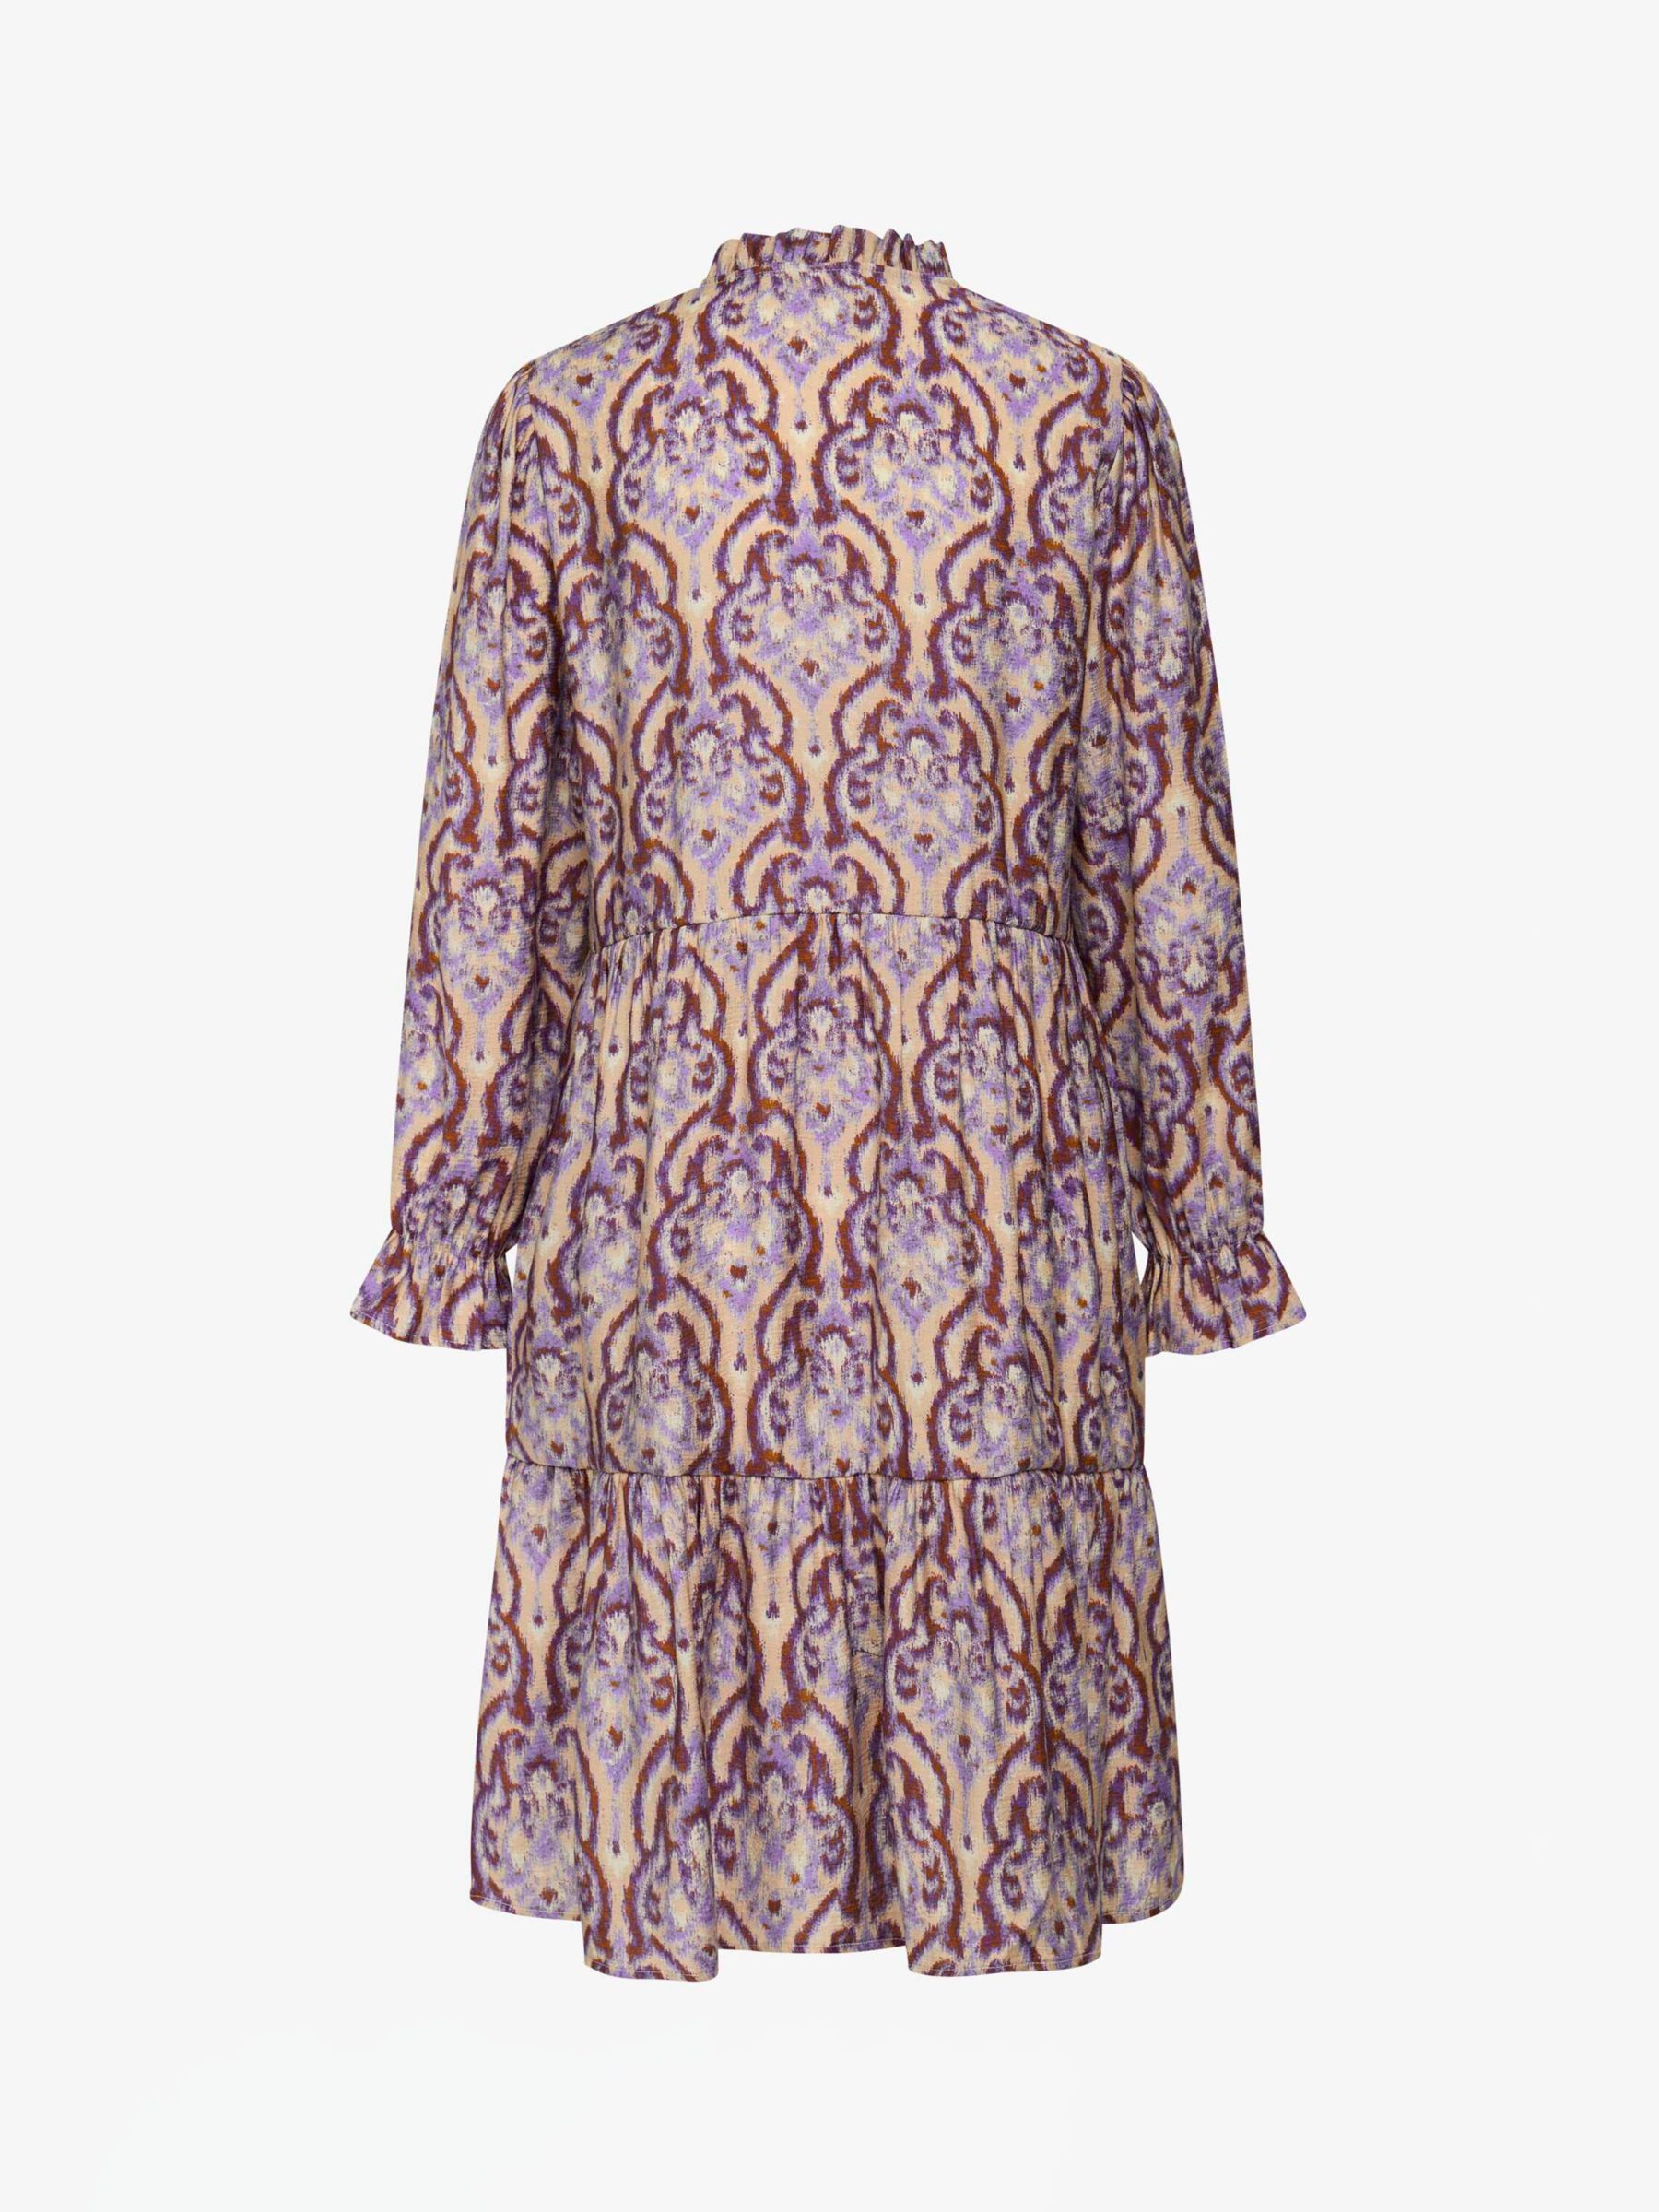 Buy Noa Noa Mirabel Abstract Print Dress, Purple/Beige Online at johnlewis.com